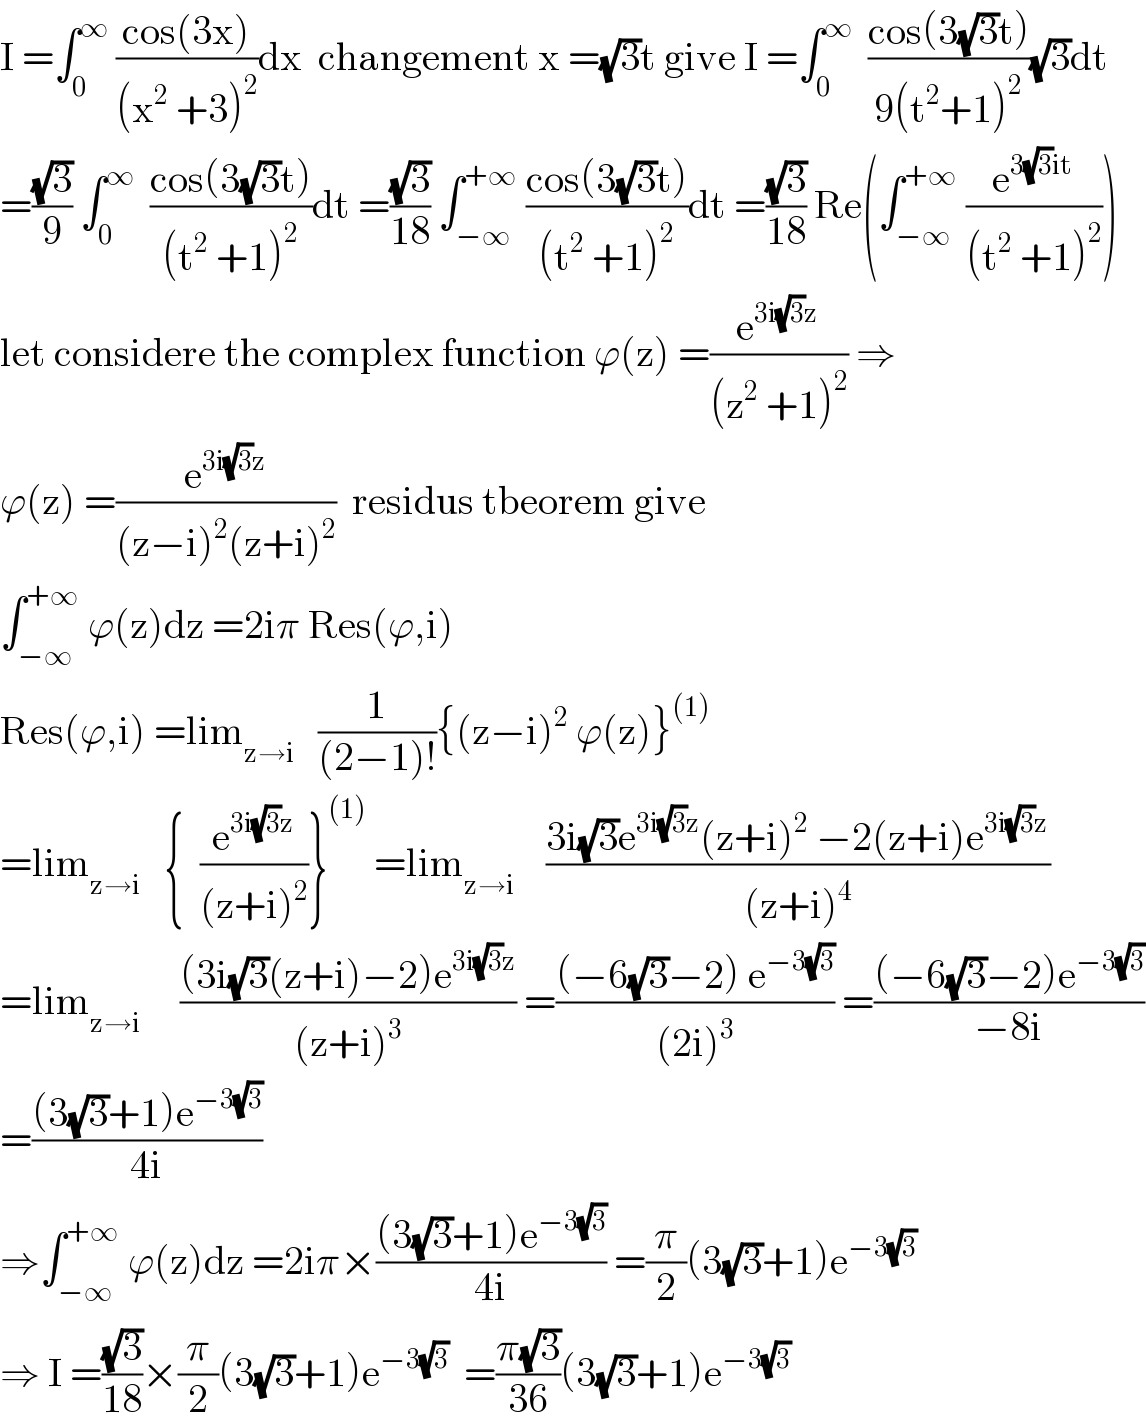 I =∫_0 ^∞  ((cos(3x))/((x^2  +3)^2 ))dx  changement x =(√3)t give I =∫_0 ^∞   ((cos(3(√3)t))/(9(t^2 +1)^2 ))(√3)dt  =((√3)/9) ∫_0 ^∞   ((cos(3(√3)t))/((t^2  +1)^2 ))dt =((√3)/(18)) ∫_(−∞) ^(+∞)  ((cos(3(√3)t))/((t^2  +1)^2 ))dt =((√3)/(18)) Re(∫_(−∞) ^(+∞)  (e^(3(√3)it) /((t^2  +1)^2 )))  let considere the complex function ϕ(z) =(e^(3i(√3)z) /((z^2  +1)^2 )) ⇒  ϕ(z) =(e^(3i(√3)z) /((z−i)^2 (z+i)^2 ))  residus tbeorem give  ∫_(−∞) ^(+∞)  ϕ(z)dz =2iπ Res(ϕ,i)  Res(ϕ,i) =lim_(z→i)    (1/((2−1)!)){(z−i)^2  ϕ(z)}^((1))   =lim_(z→i)    {  (e^(3i(√3)z) /((z+i)^2 ))}^((1))  =lim_(z→i)     ((3i(√3)e^(3i(√3)z) (z+i)^2  −2(z+i)e^(3i(√3)z) )/((z+i)^4 ))  =lim_(z→i)      (((3i(√3)(z+i)−2)e^(3i(√3)z) )/((z+i)^3 )) =(((−6(√3)−2) e^(−3(√3)) )/((2i)^3 )) =(((−6(√3)−2)e^(−3(√3)) )/(−8i))  =(((3(√3)+1)e^(−3(√3)) )/(4i))  ⇒∫_(−∞) ^(+∞)  ϕ(z)dz =2iπ×(((3(√3)+1)e^(−3(√3)) )/(4i)) =(π/2)(3(√3)+1)e^(−3(√3))   ⇒ I =((√3)/(18))×(π/2)(3(√3)+1)e^(−3(√3))   =((π(√3))/(36))(3(√3)+1)e^(−3(√3))   